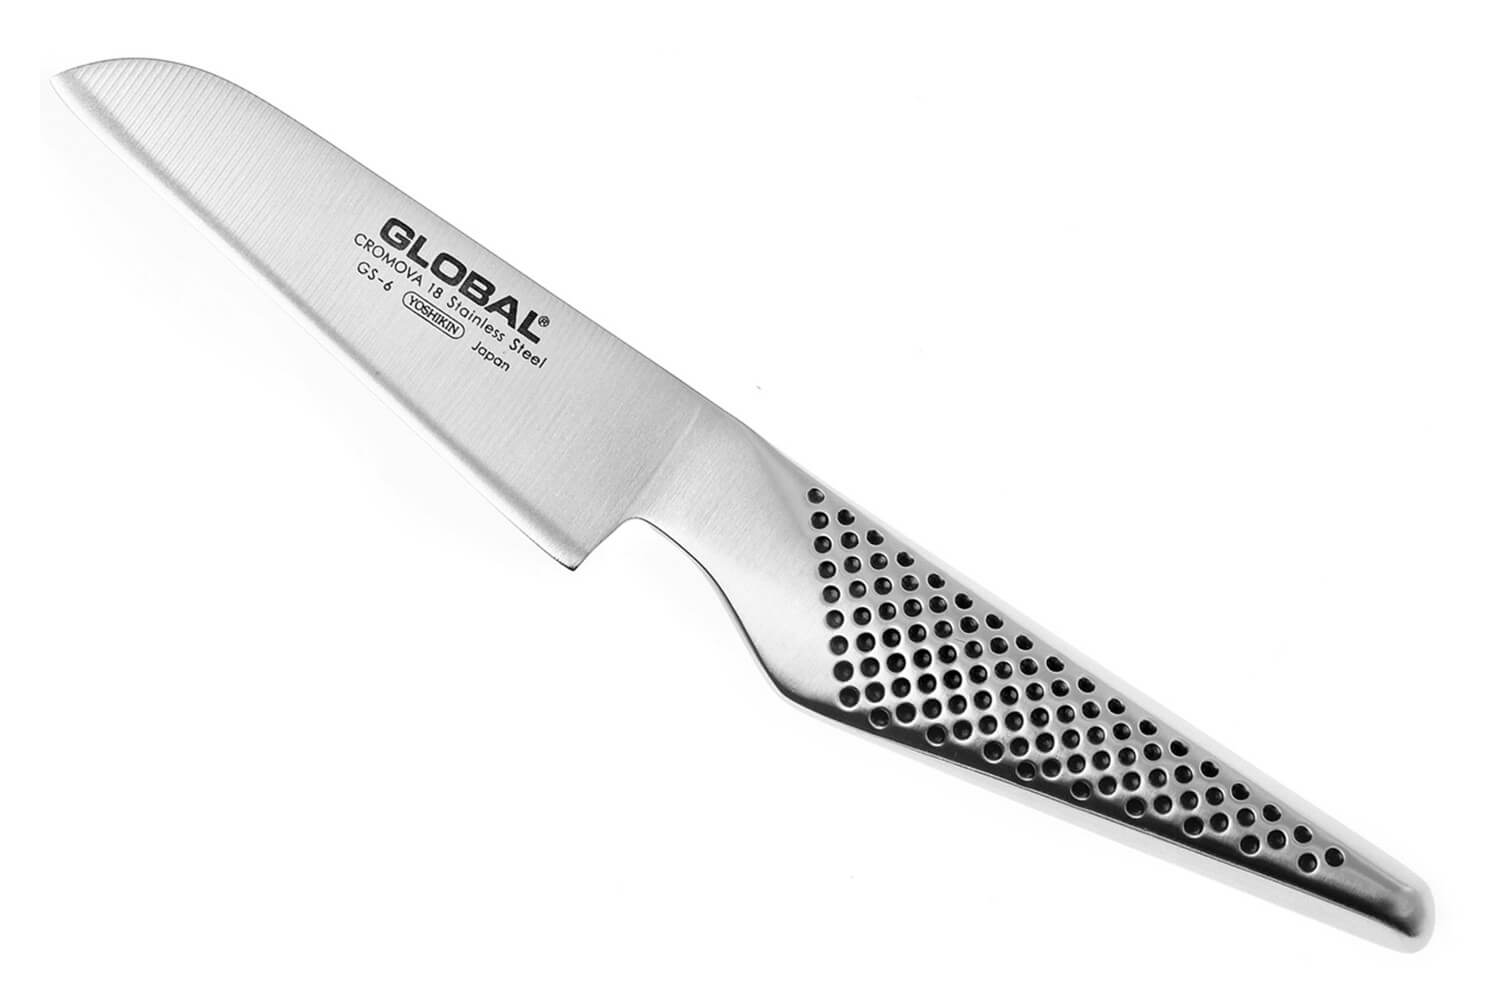 Couteau éplucheur Global GS6 lame en acier inox